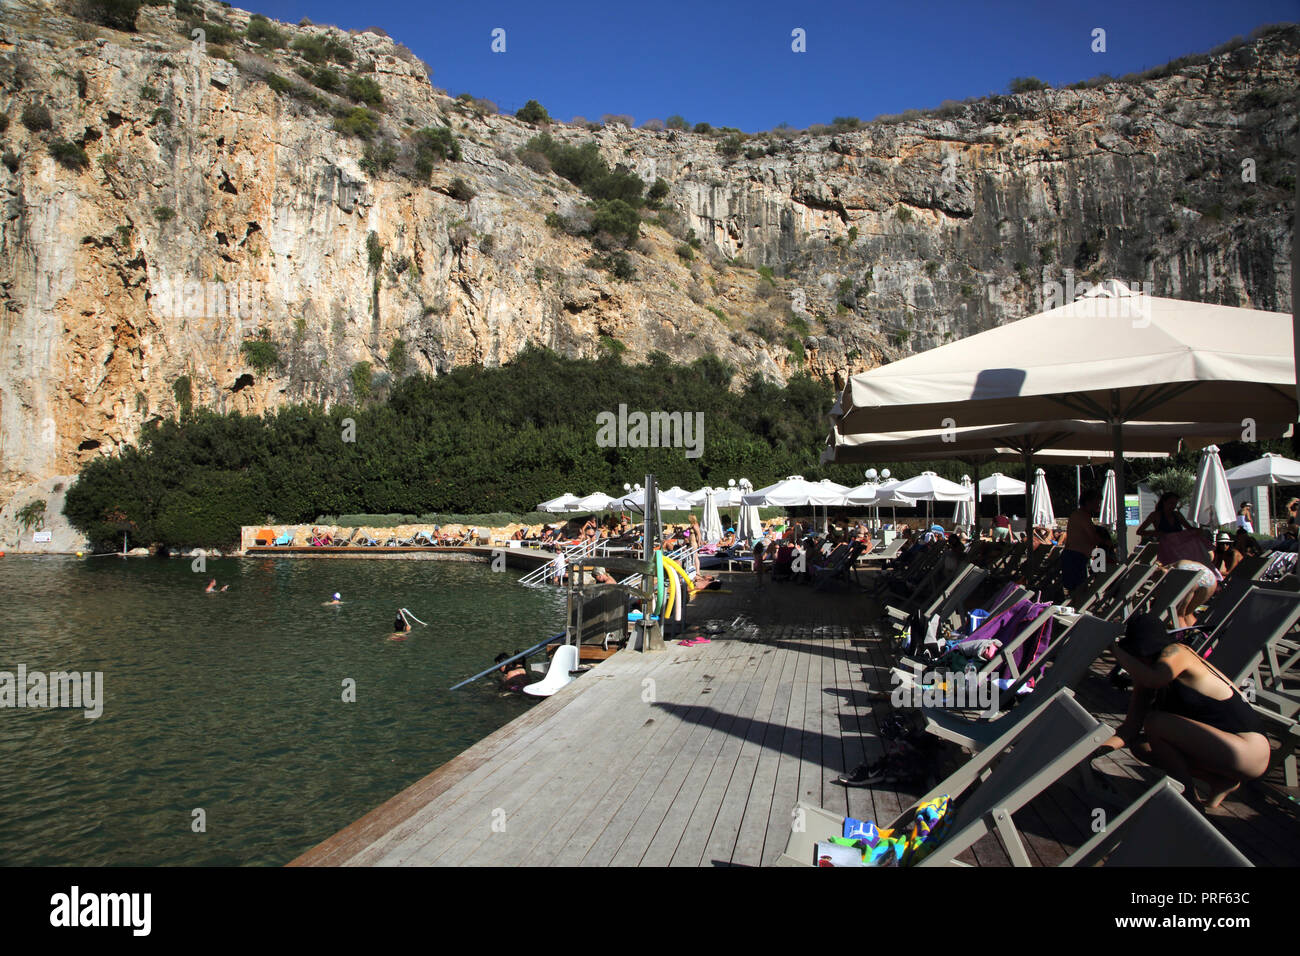 Vouliagmeni Atene Grecia turisti che prendono il sole sul lago Vouliagmeni una Spa naturale - una volta era una caverna, ma il tetto della grotta cadde in seguito all'erosione da t Foto Stock